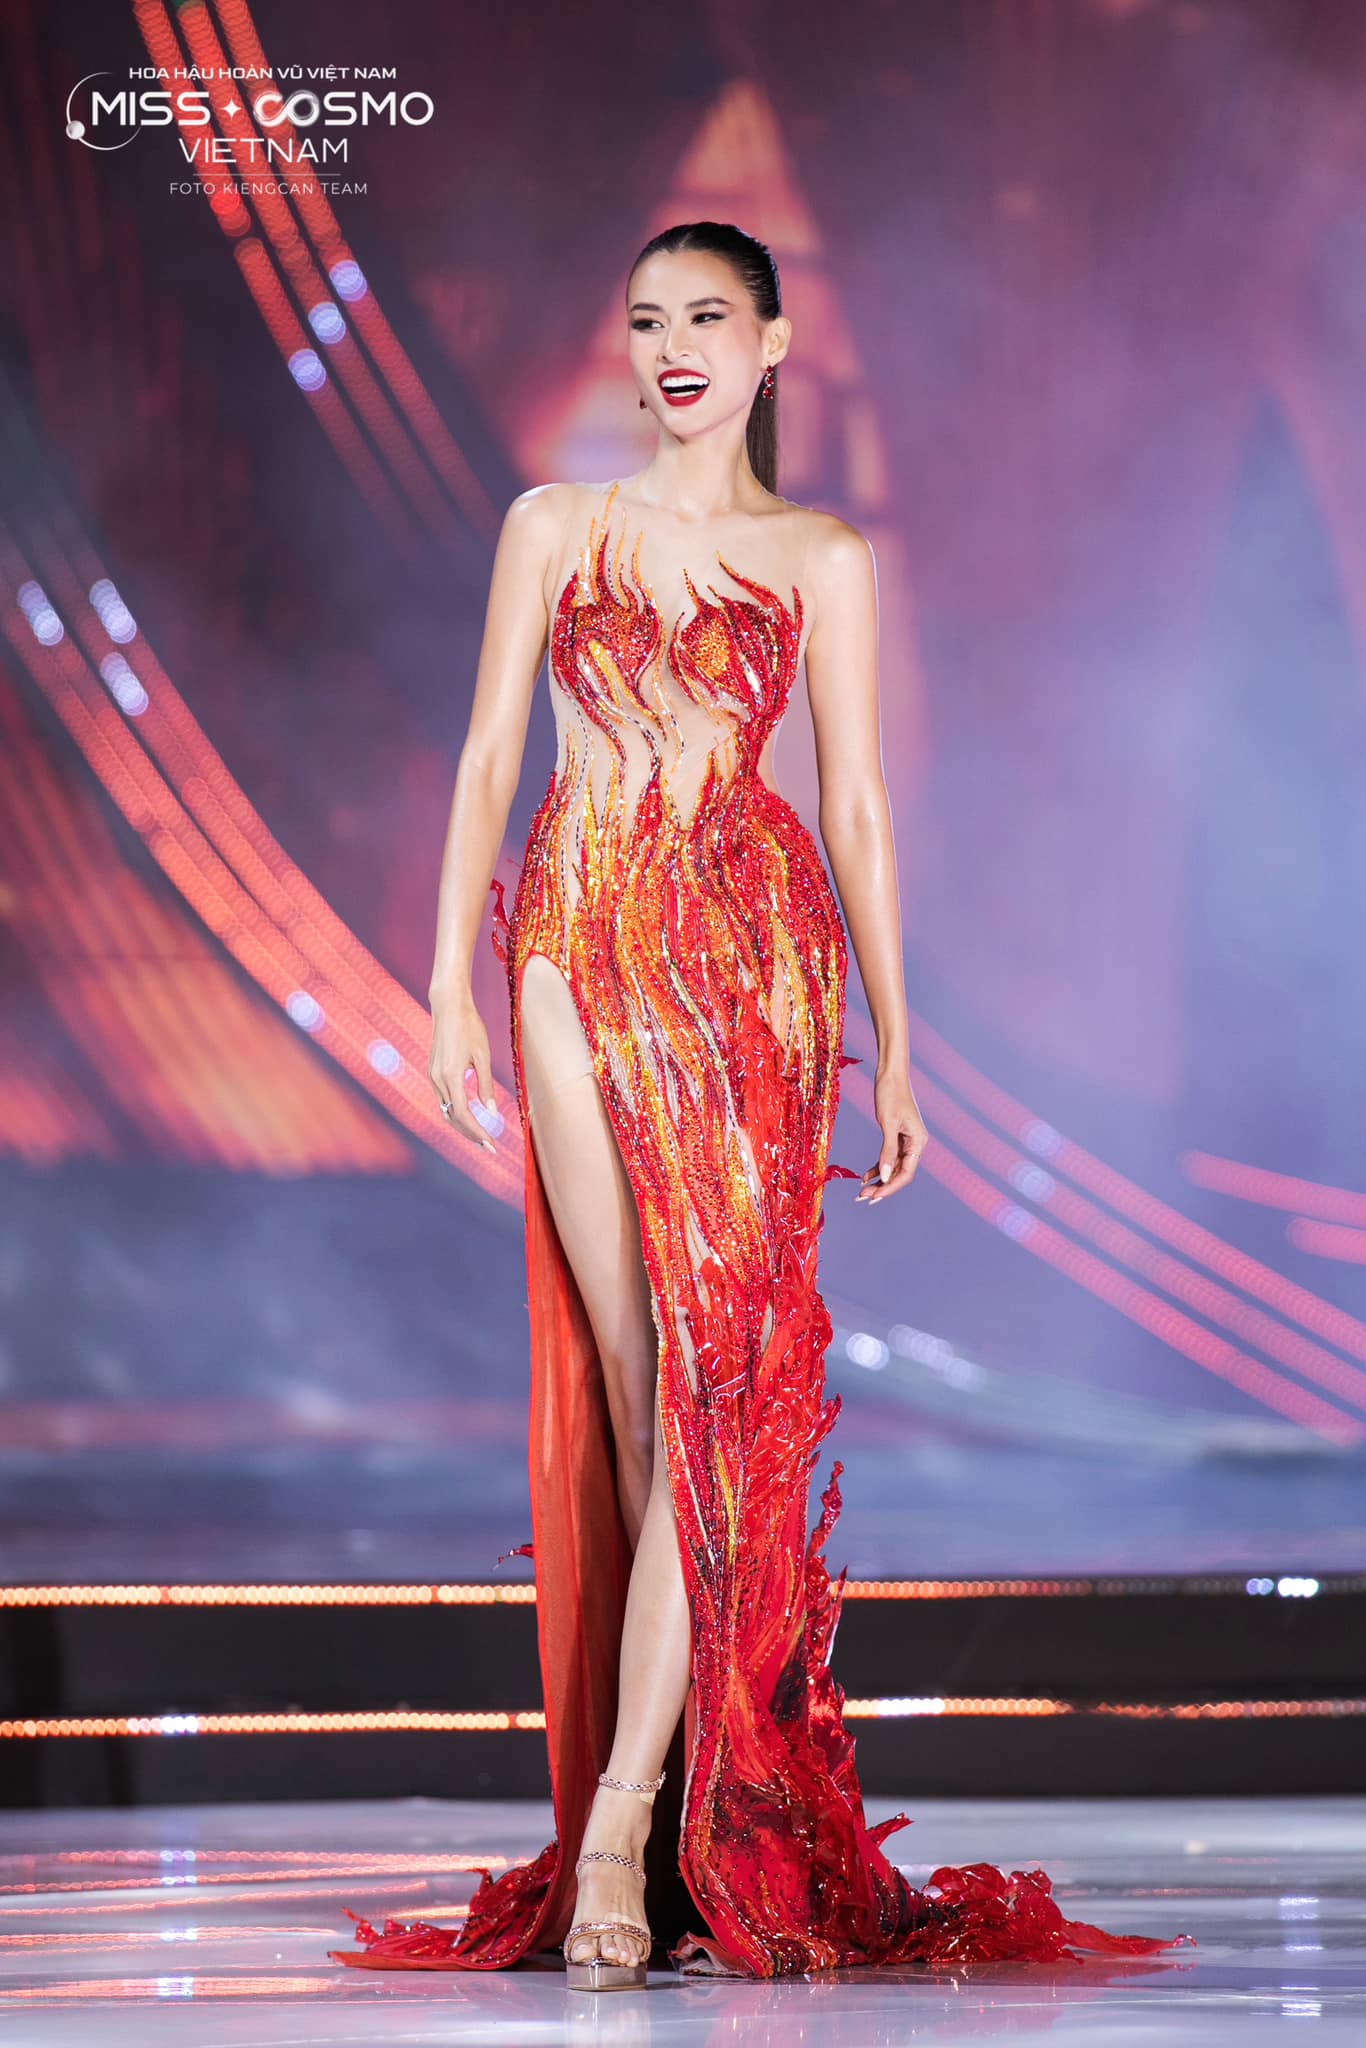 Hoa hậu Bùi Xuân Hạnh đi bê tráp cho lễ cưới của Cao Thiên Trang, danh tính ông xã người mẫu được hé lộ - ảnh 6